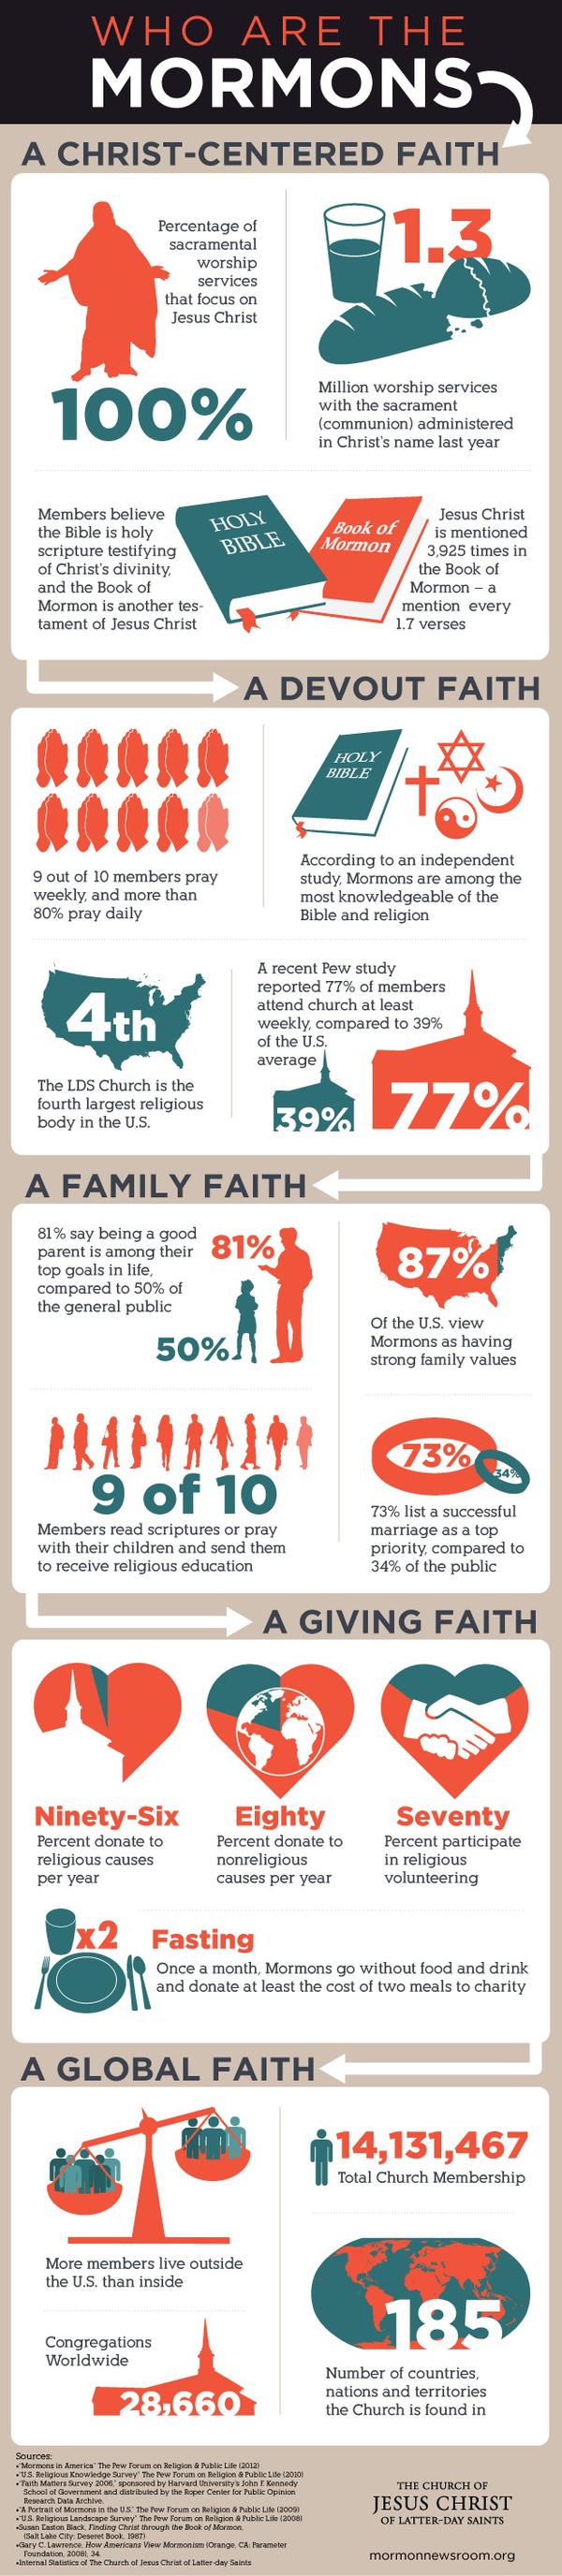 mormon-101-mormonism_Infographic